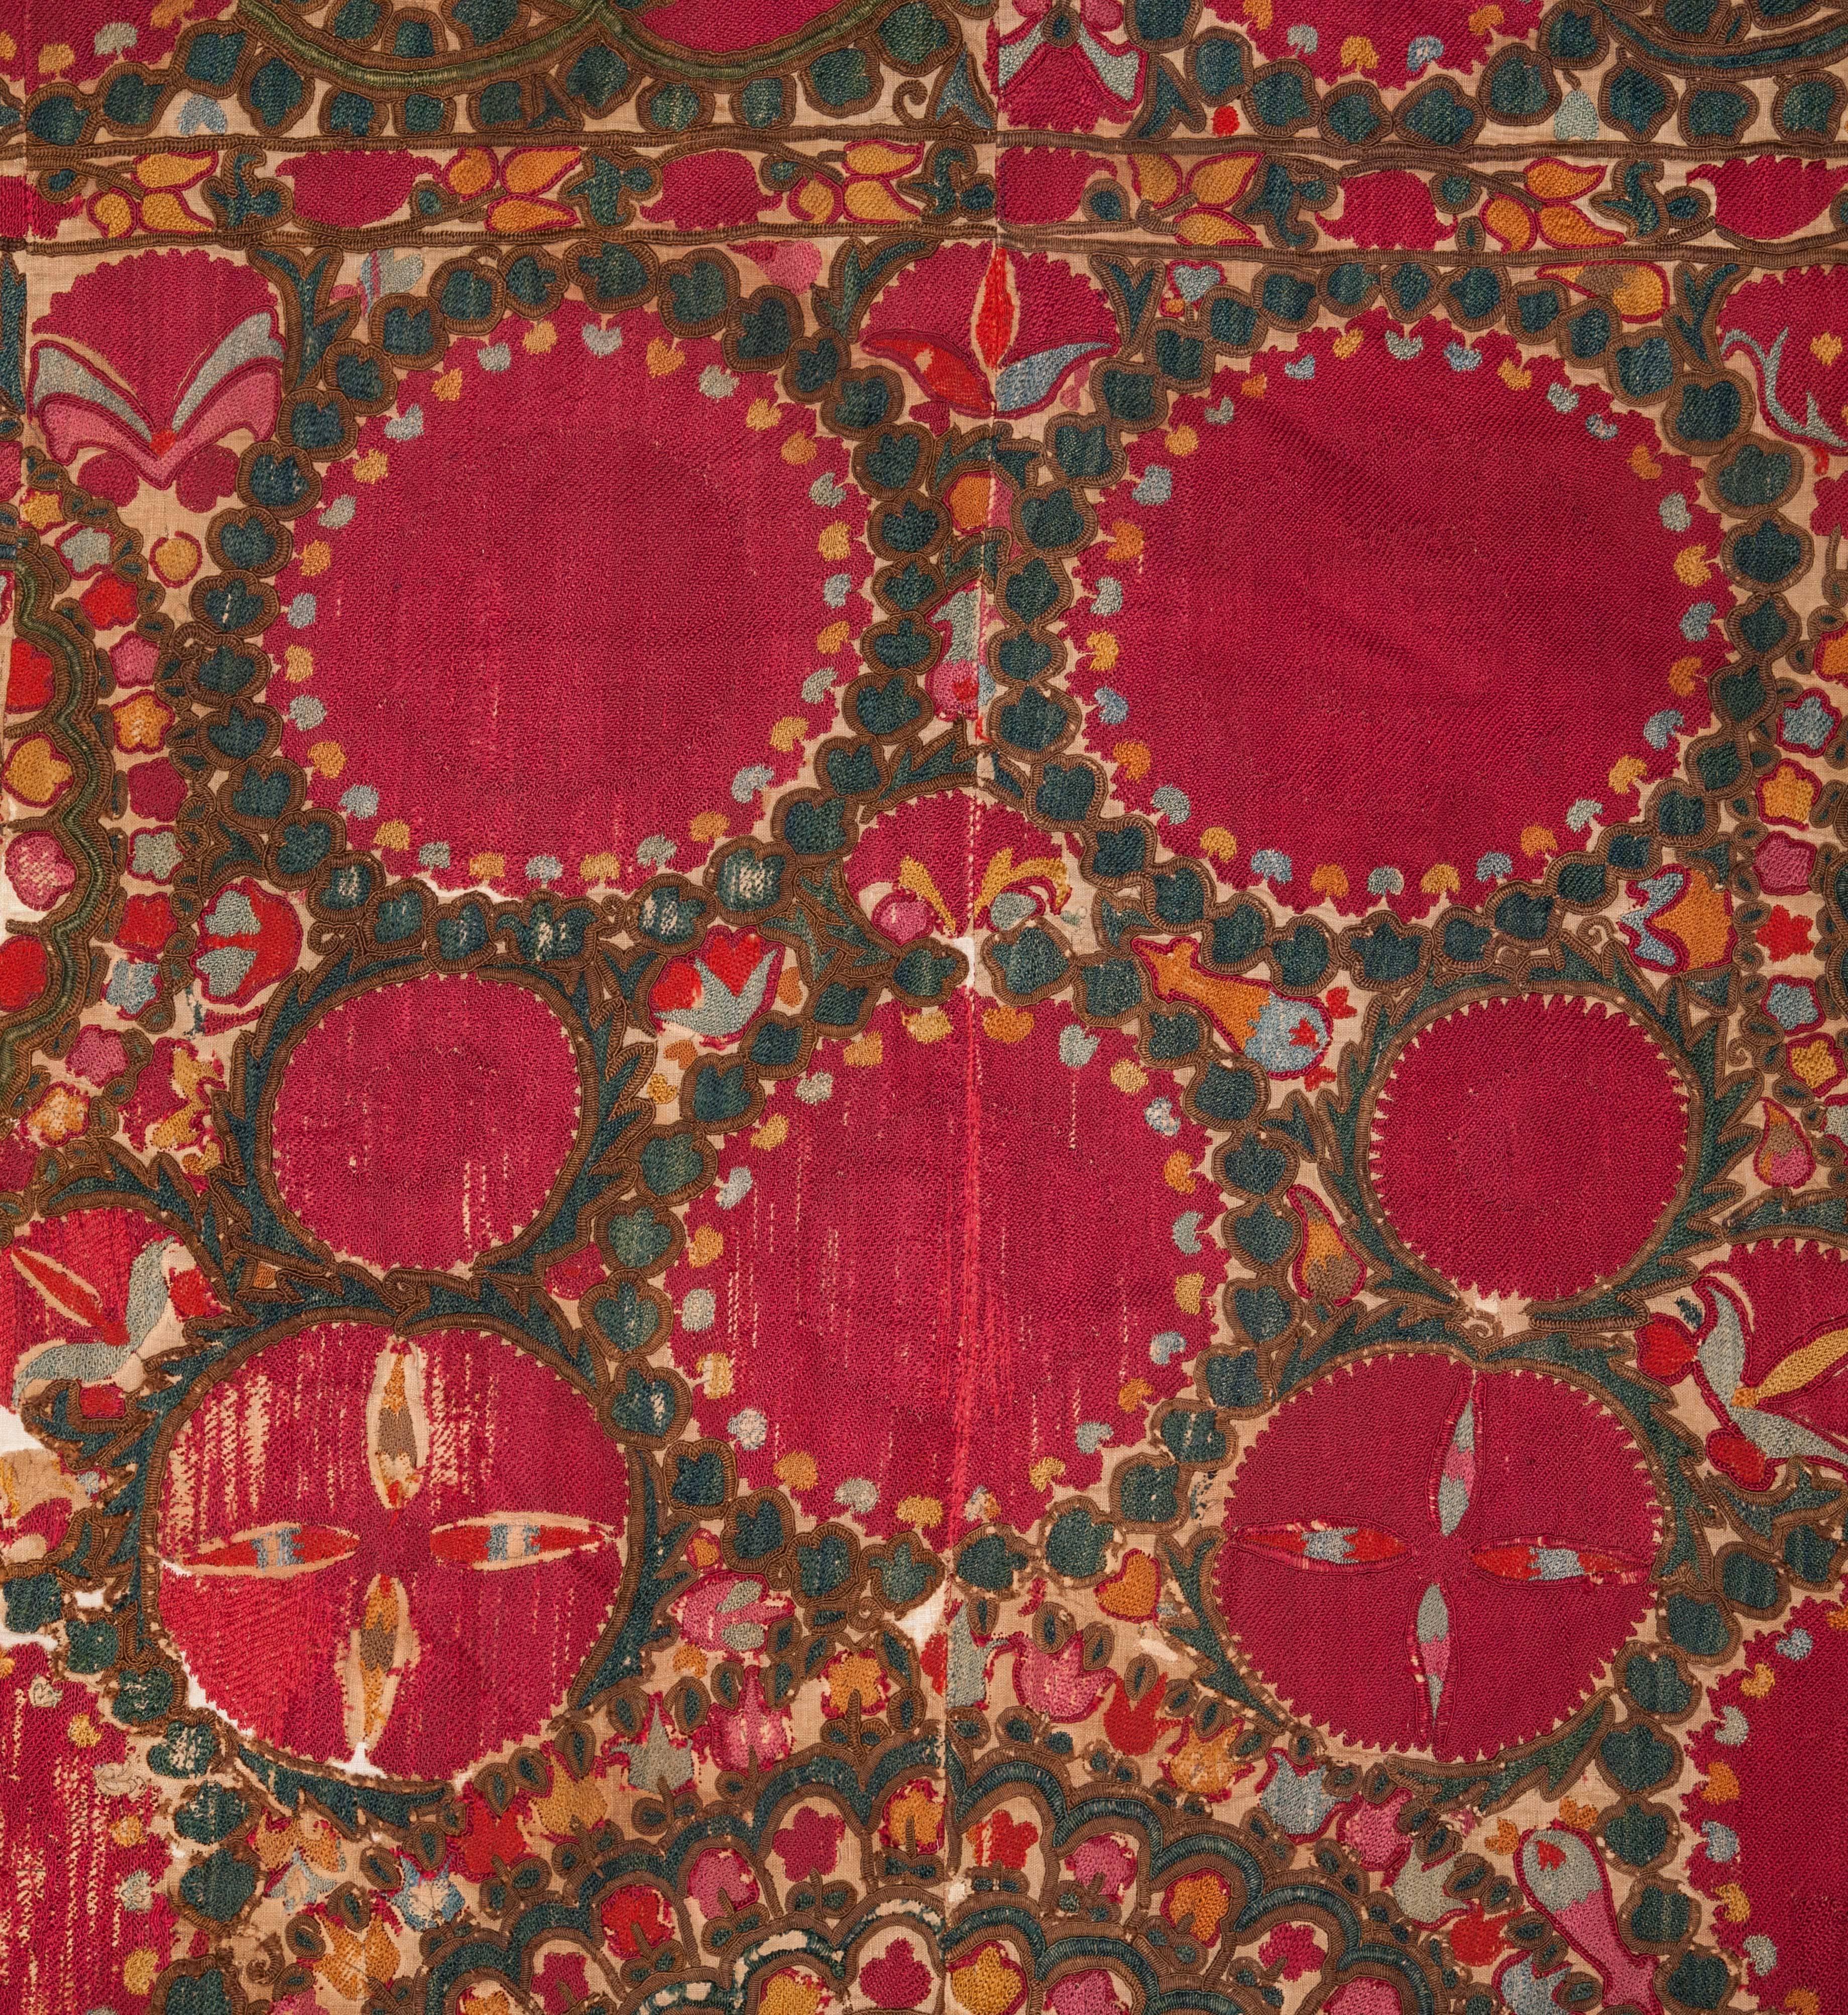 Embroidered 19th Century Antique Uzbek Tashkent Suzani